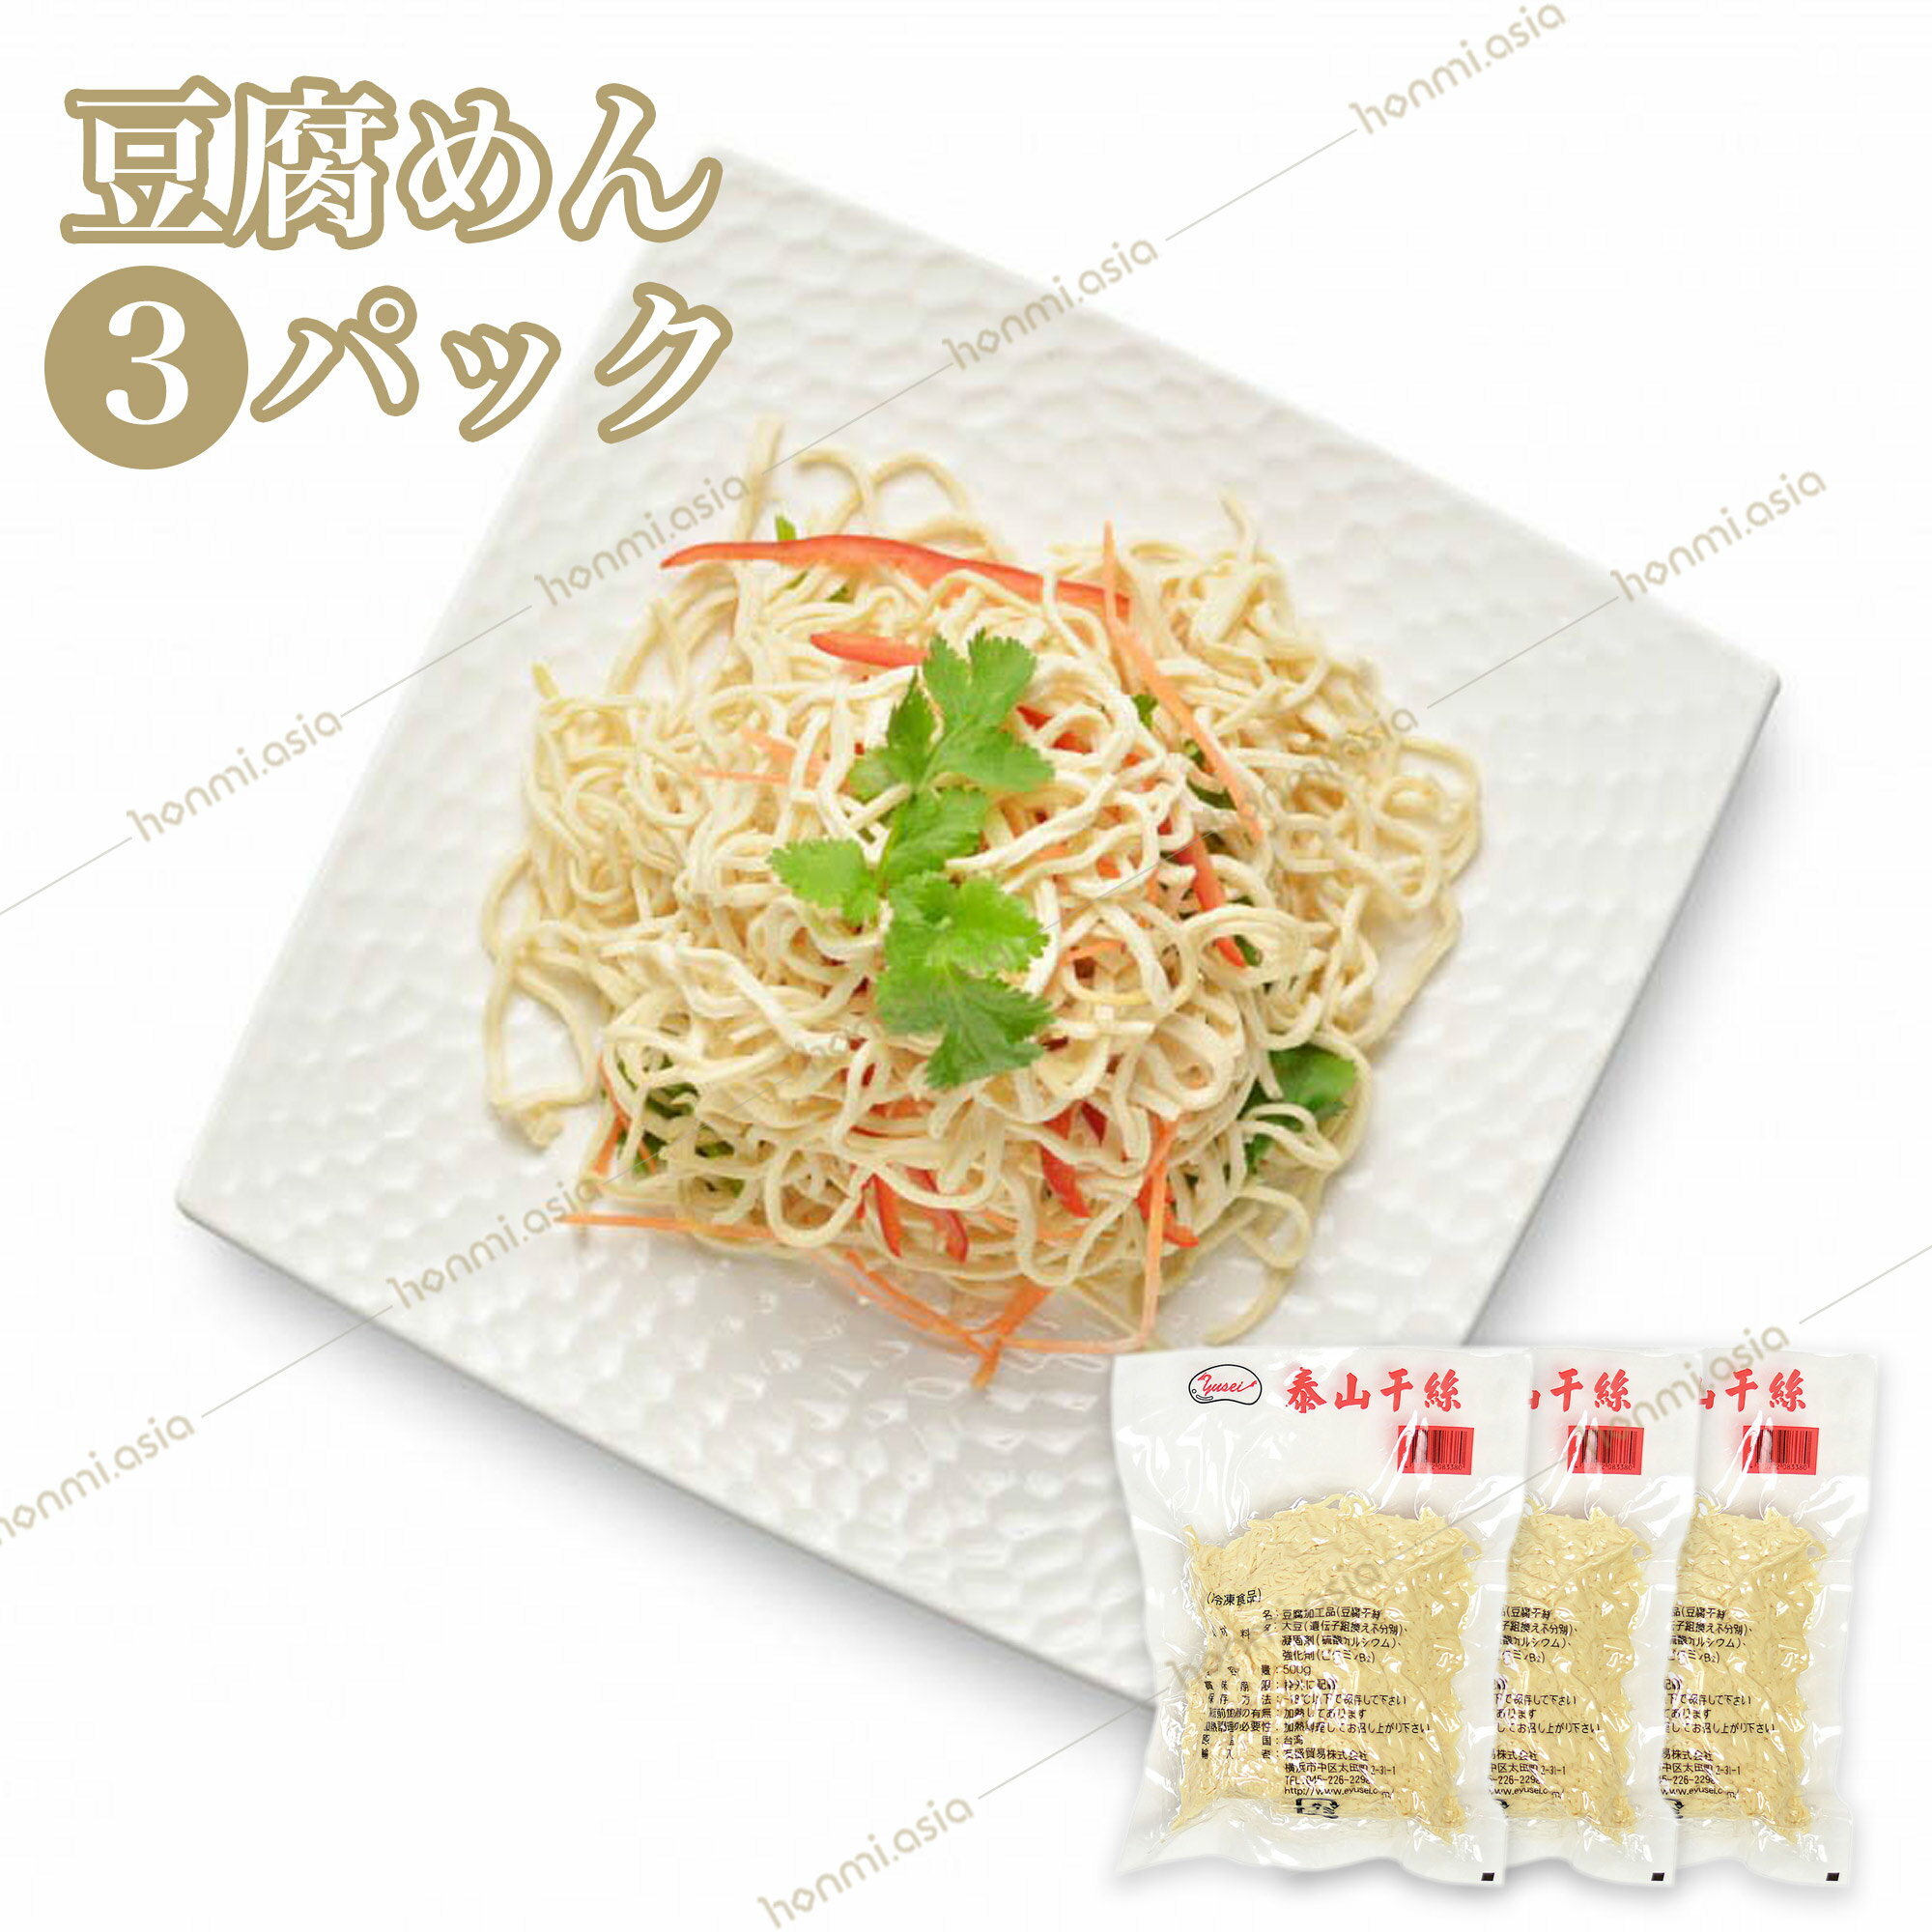 【送料無料】3パックセット 台湾産豆腐麺 500g×3 泰山